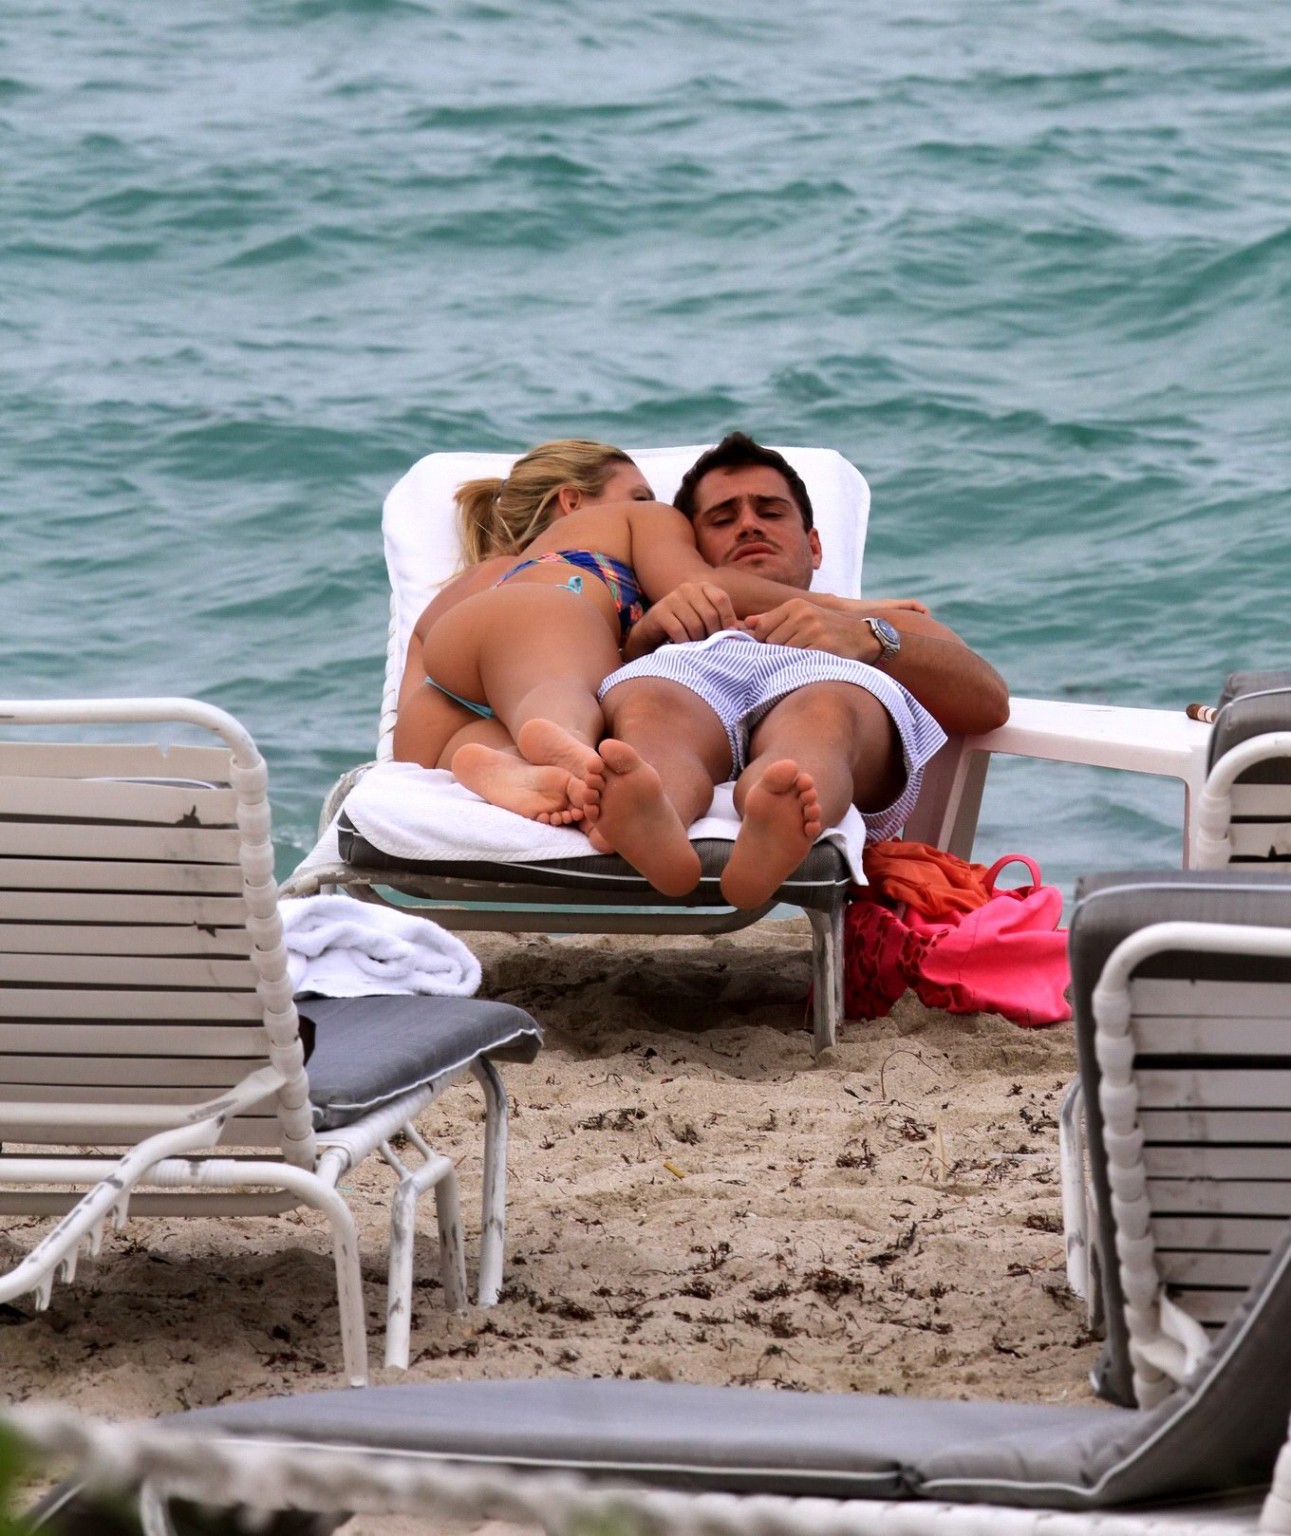 Sofia zamolo in un bikini a perizoma che fa fuori con il suo ragazzo a miami beach
 #75226756